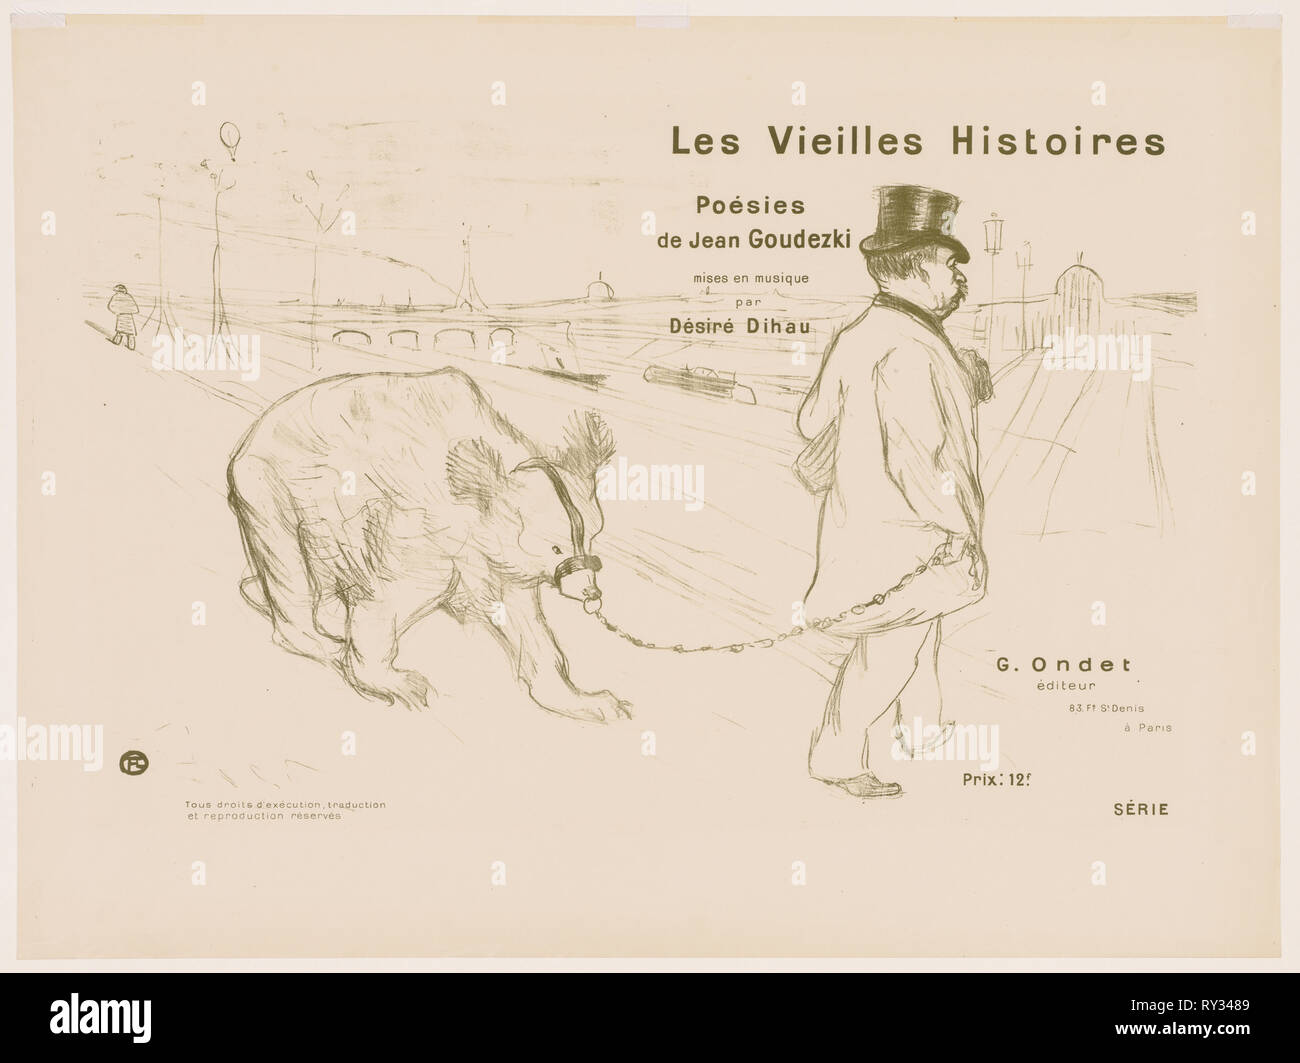 Les Vieilles histoires:  Couverture - Frontispiece, 1893. Henri de Toulouse-Lautrec (French, 1864-1901). Lithograph Stock Photo